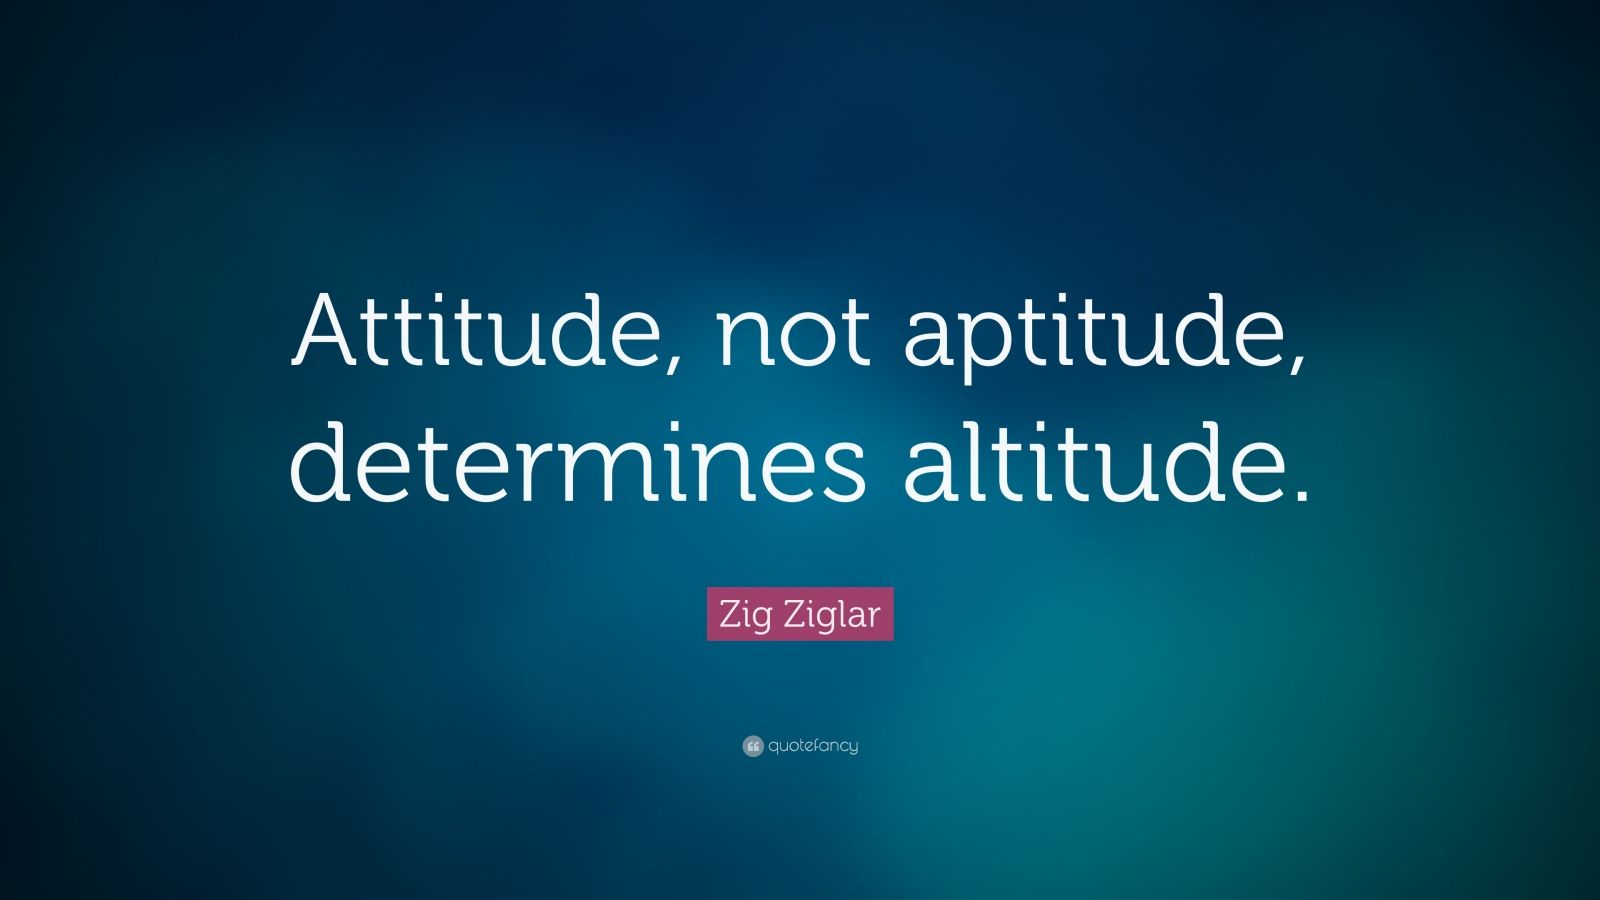 zig-ziglar-quote-attitude-not-aptitude-determines-altitude-14-wallpapers-quotefancy